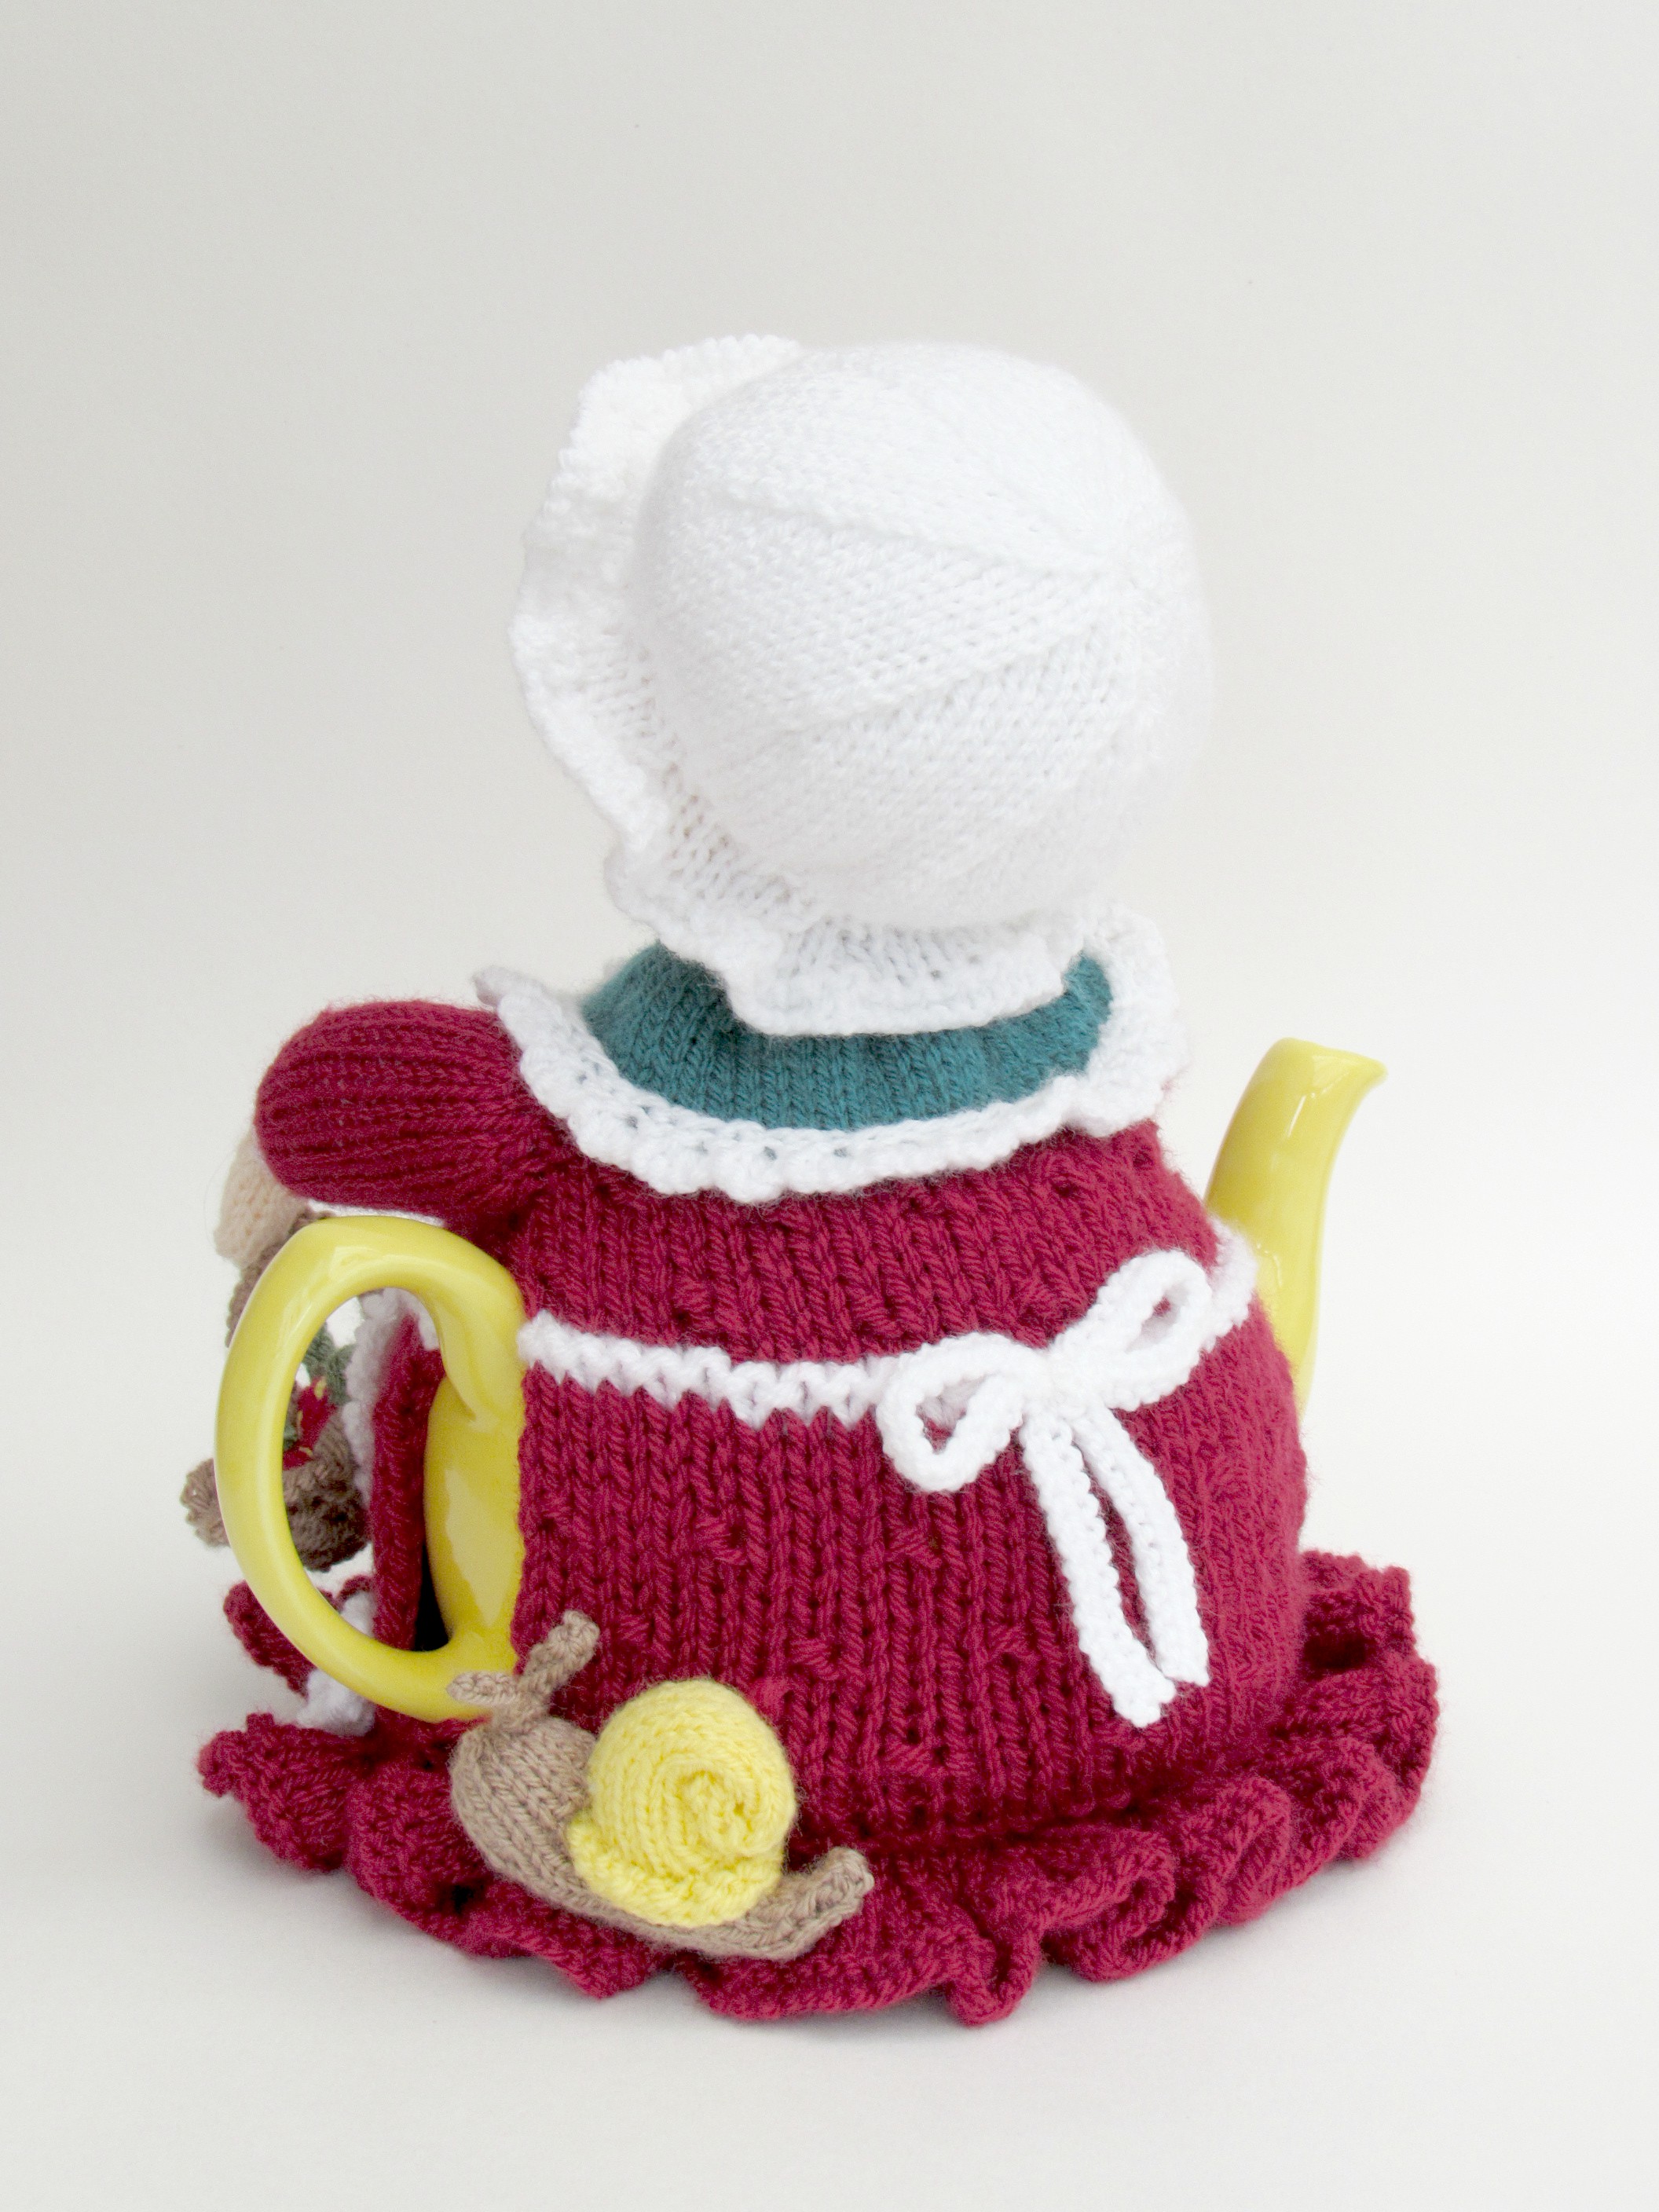 Devonshire Strawberry Picker knitting pattern